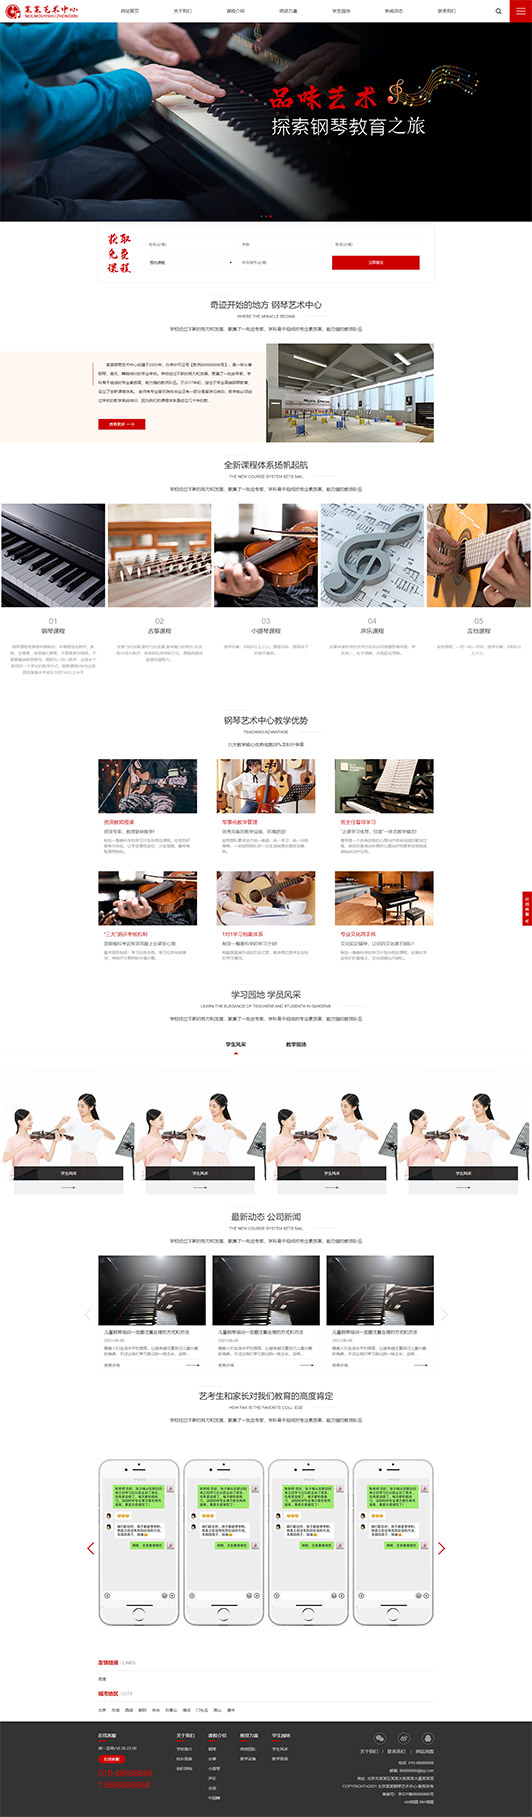 石家庄钢琴艺术培训公司响应式企业网站